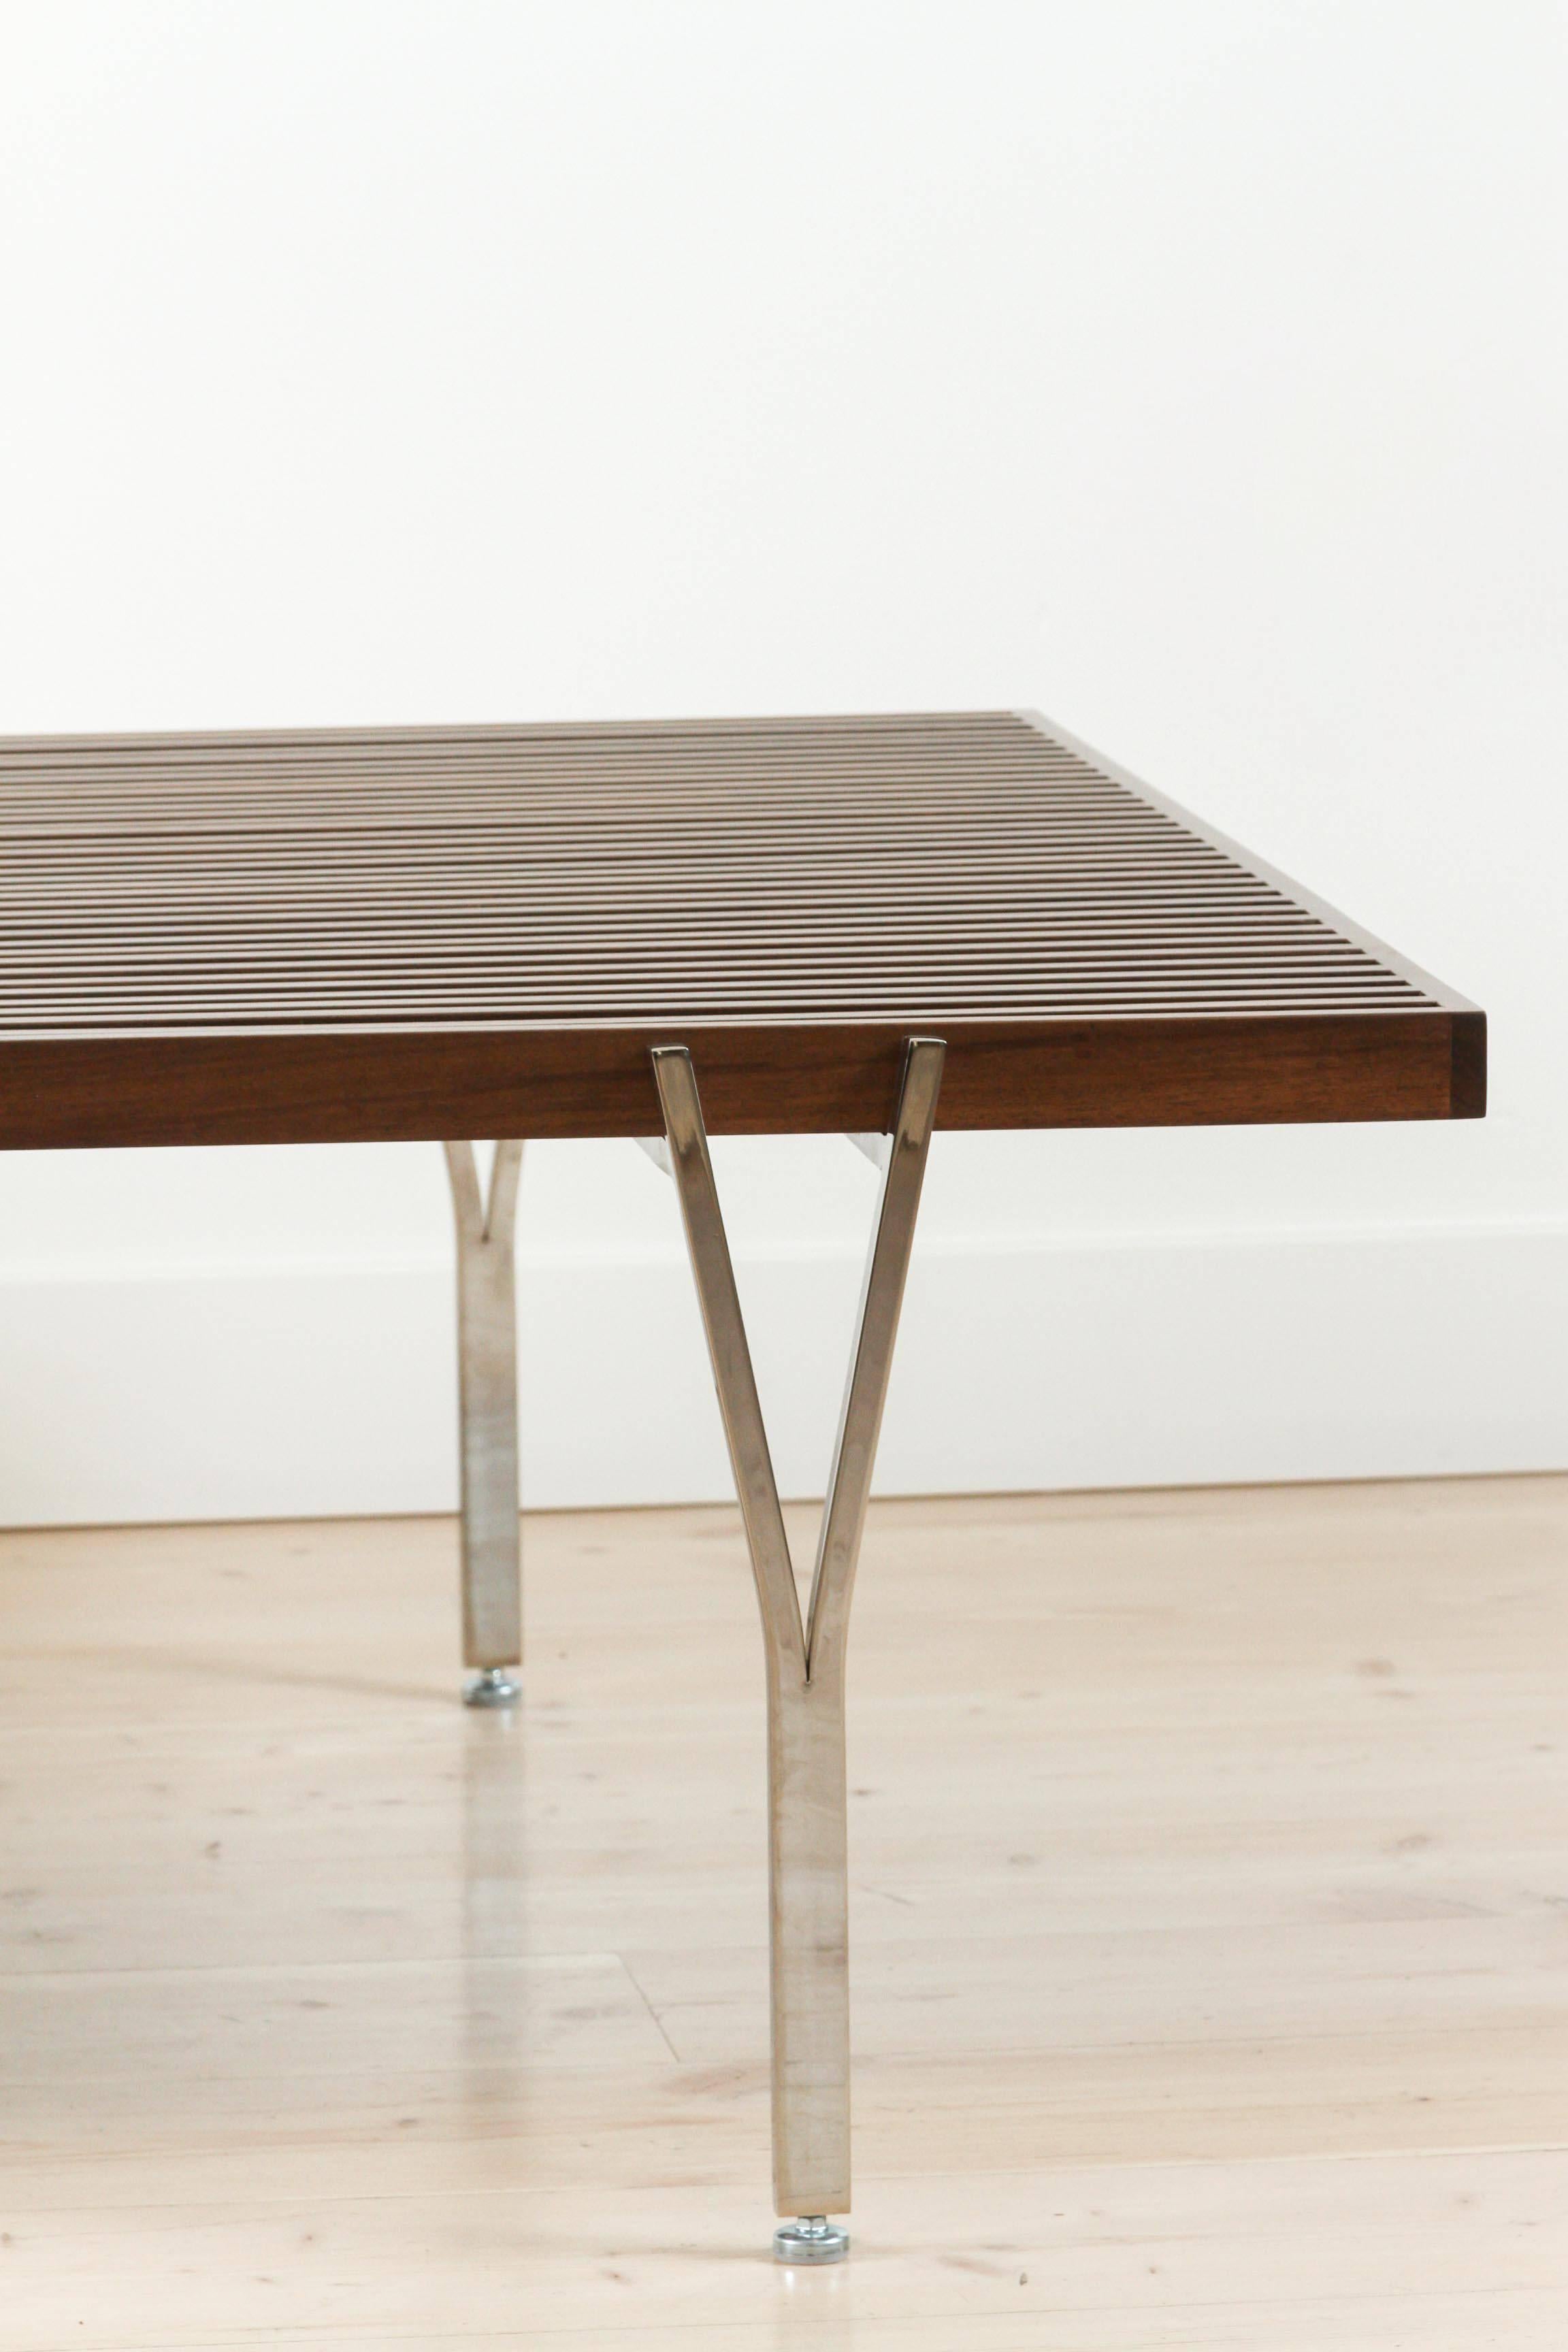 Contemporary Y-Leg Coffee Table by Lawson-Fenning